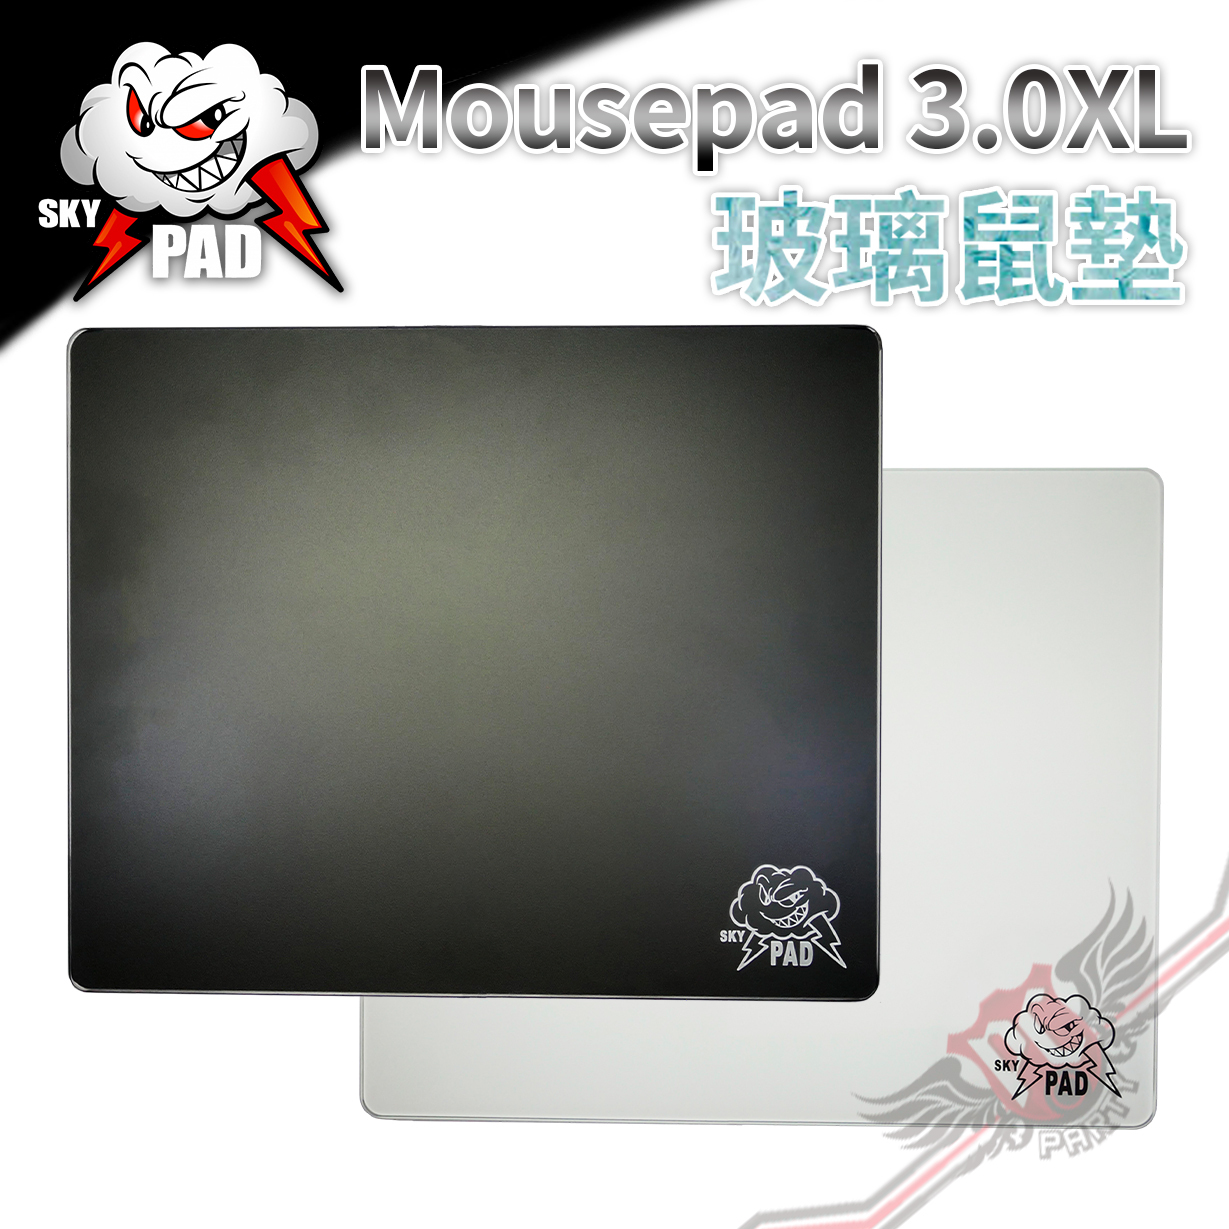 PCPARTY SKYPAD 玻璃鼠墊3.0 XL 黑色白色雲朵